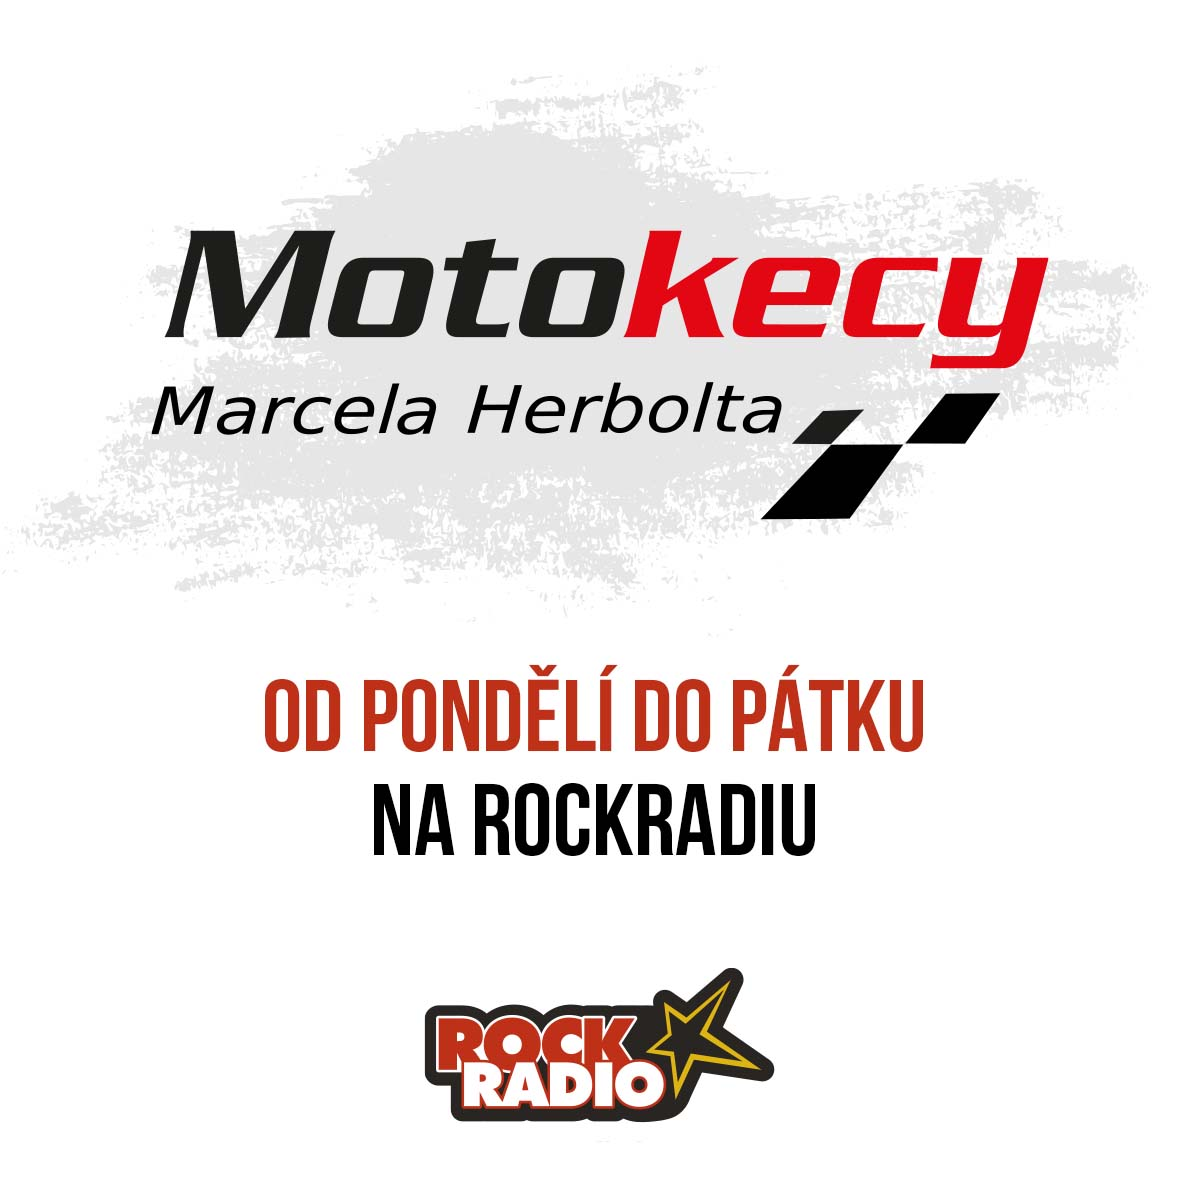 Motokecy Marcela Herbolta na pondělí 25. září